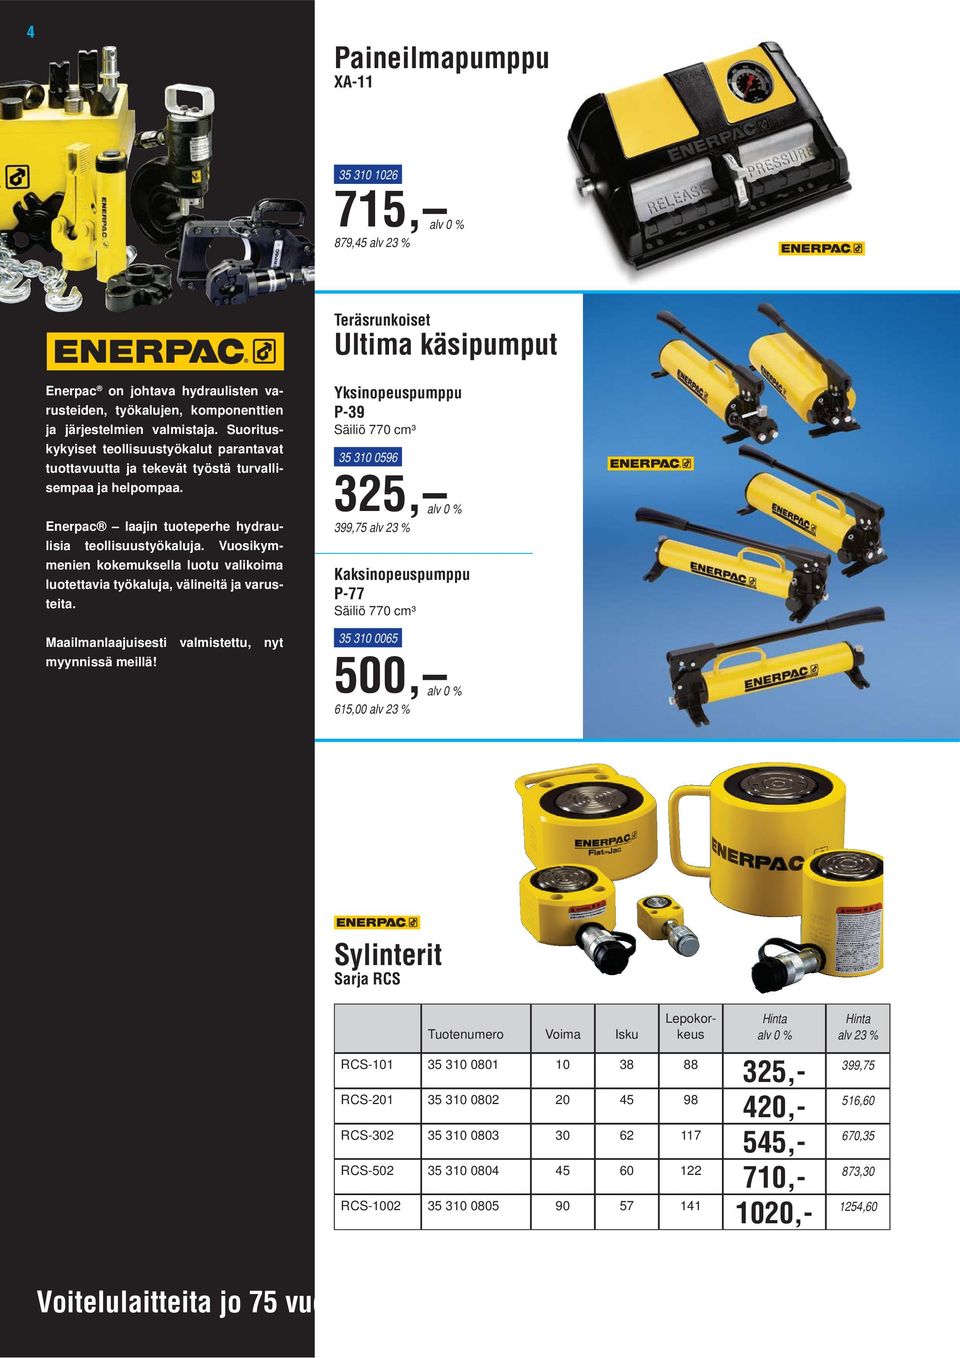 RCS-1002 35 310 0805 90 57 141 Hinta Enerpac on johtava hydraulisten varusteiden, työkalujen, komponenttien ja järjestelmien valmistaja.